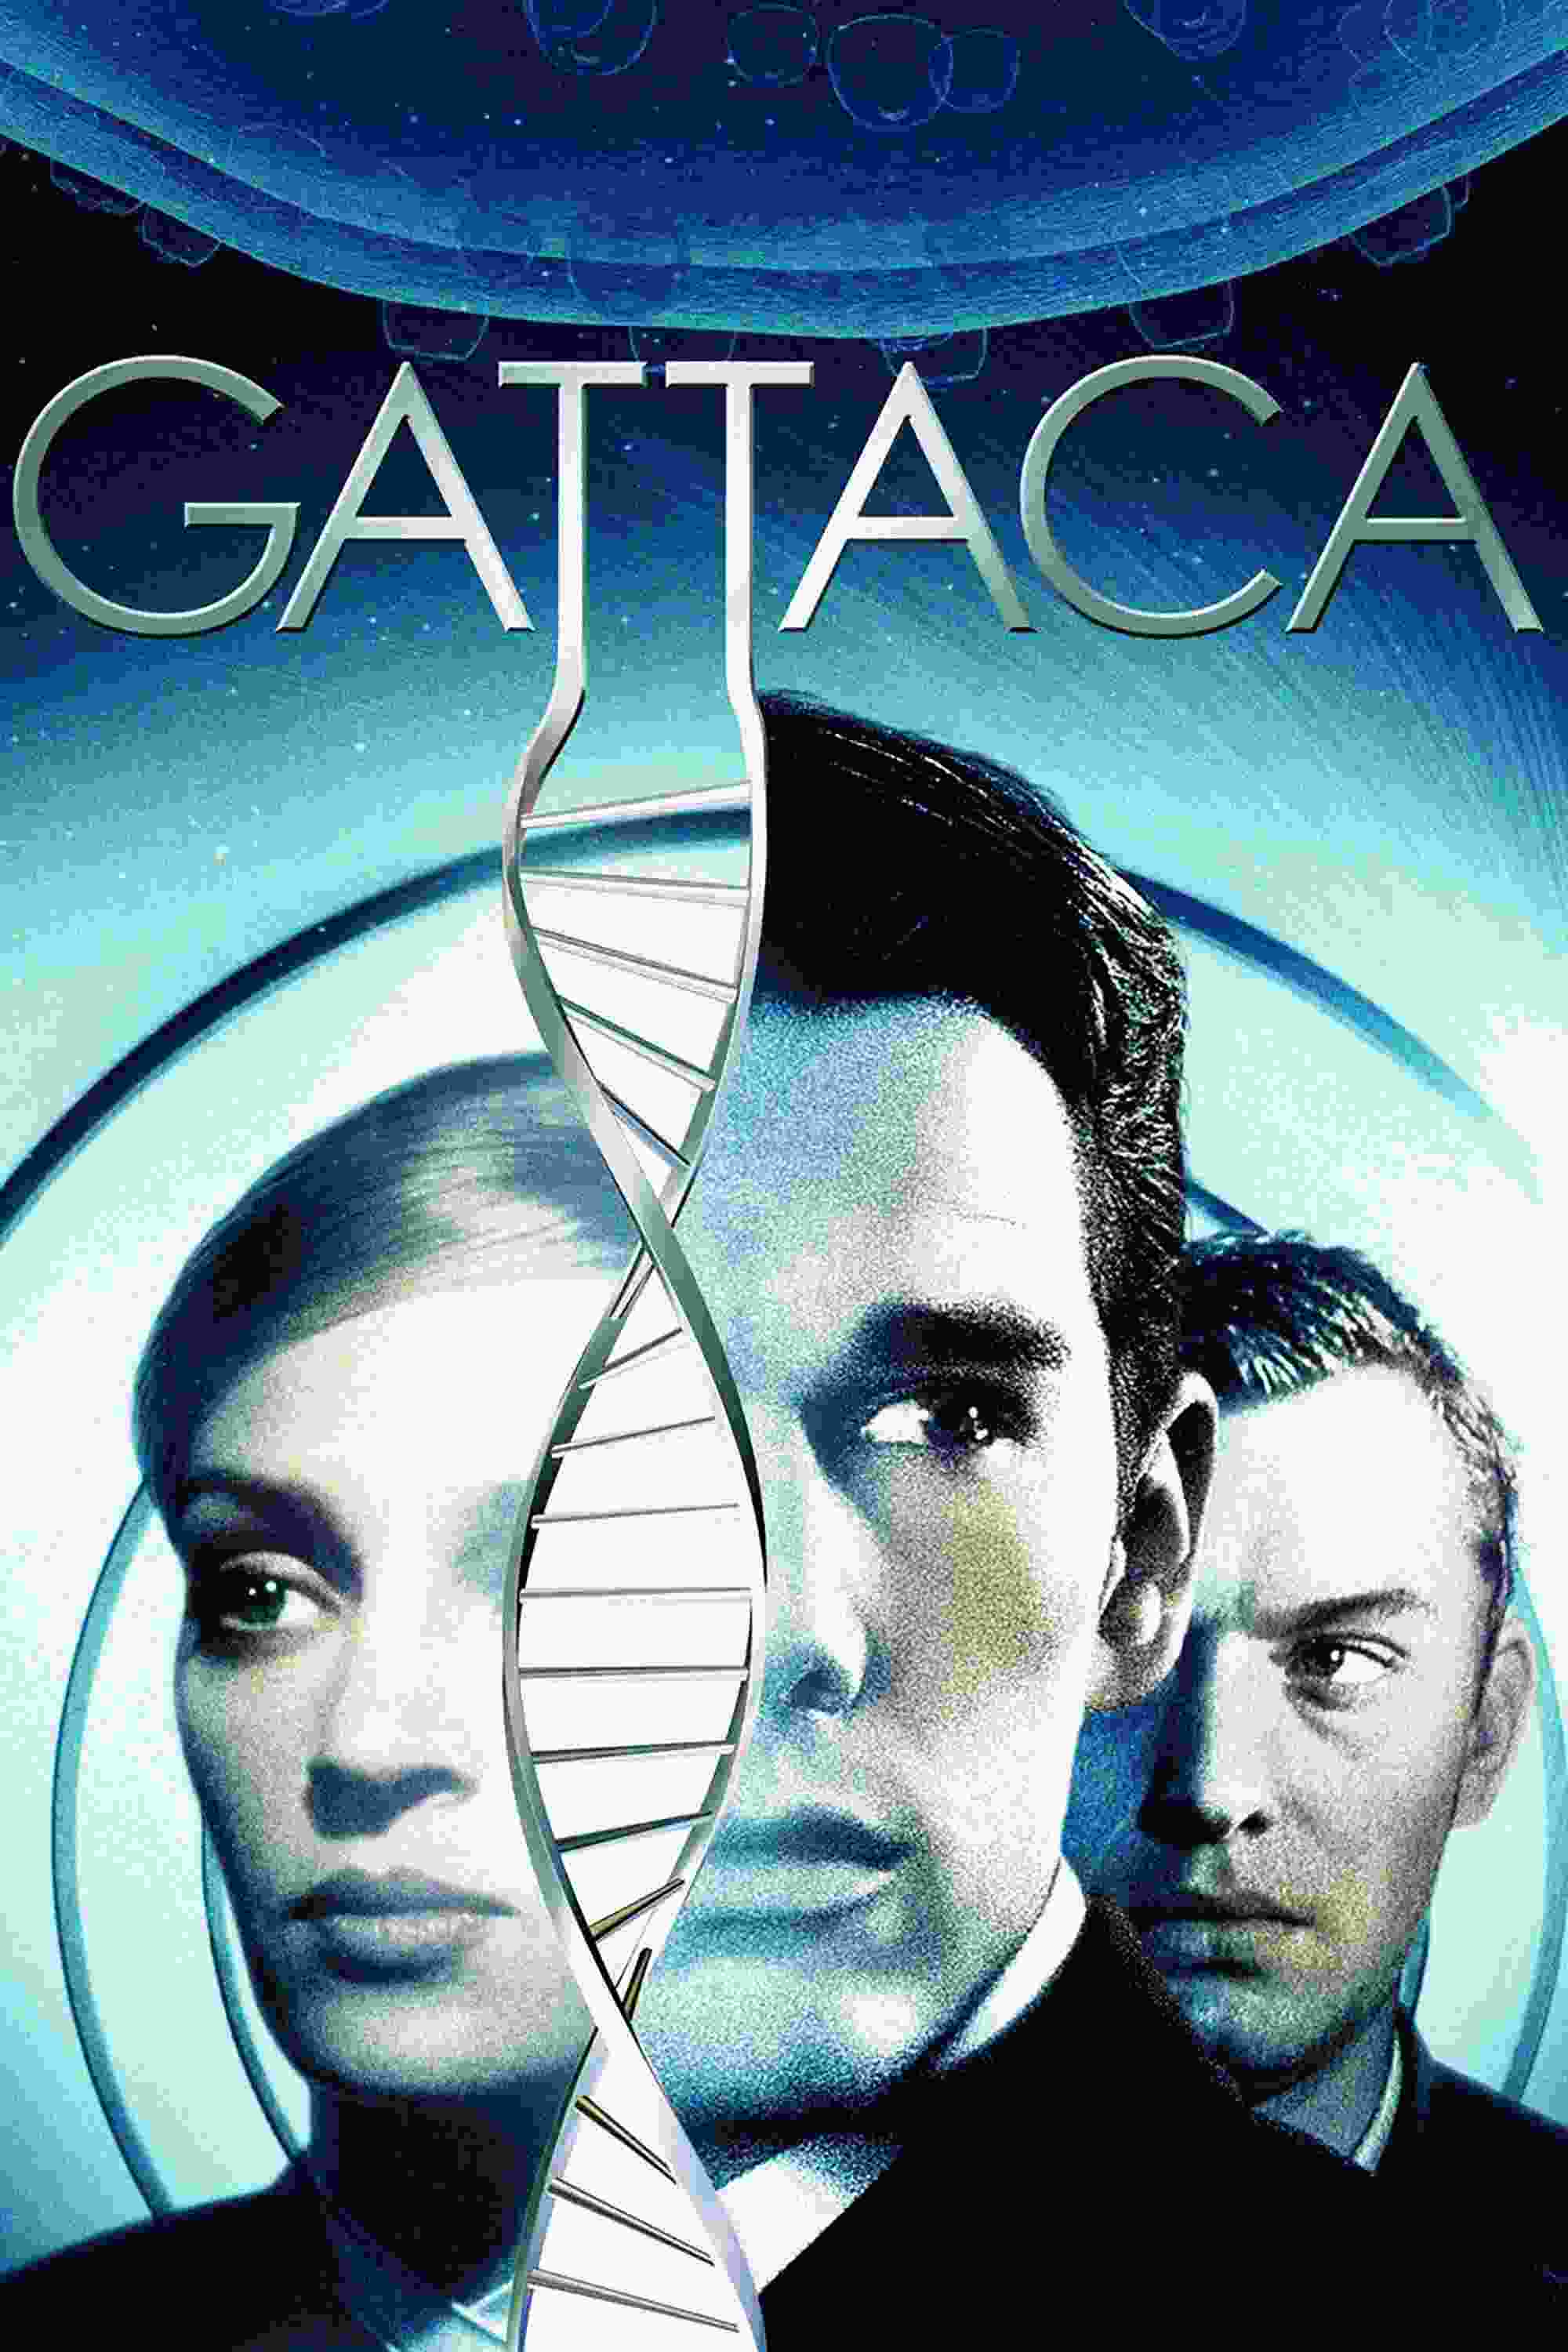 Gattaca (1997) Ethan Hawke